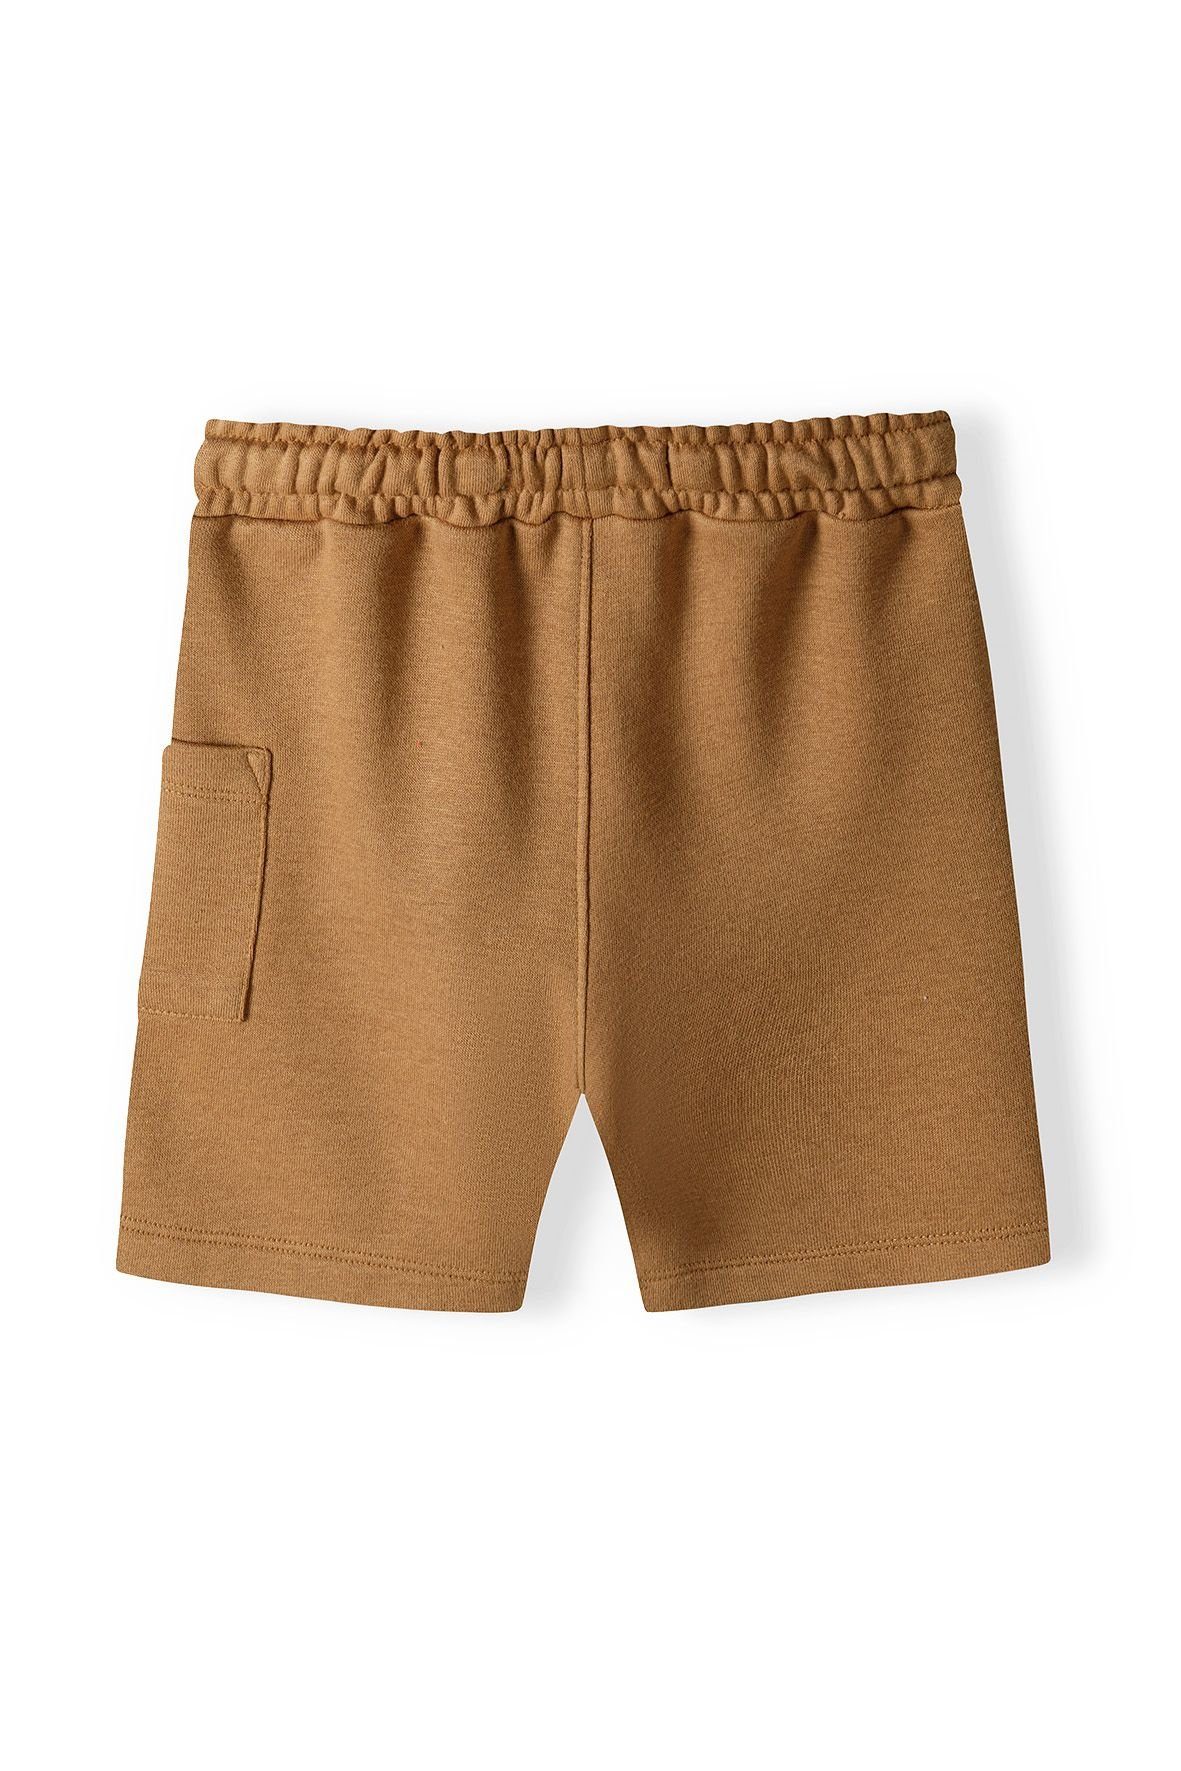 MINOTI T-Shirt Gelbbraun & Sweatbermudas und T-Shirt Set (12m-8y) Shorts